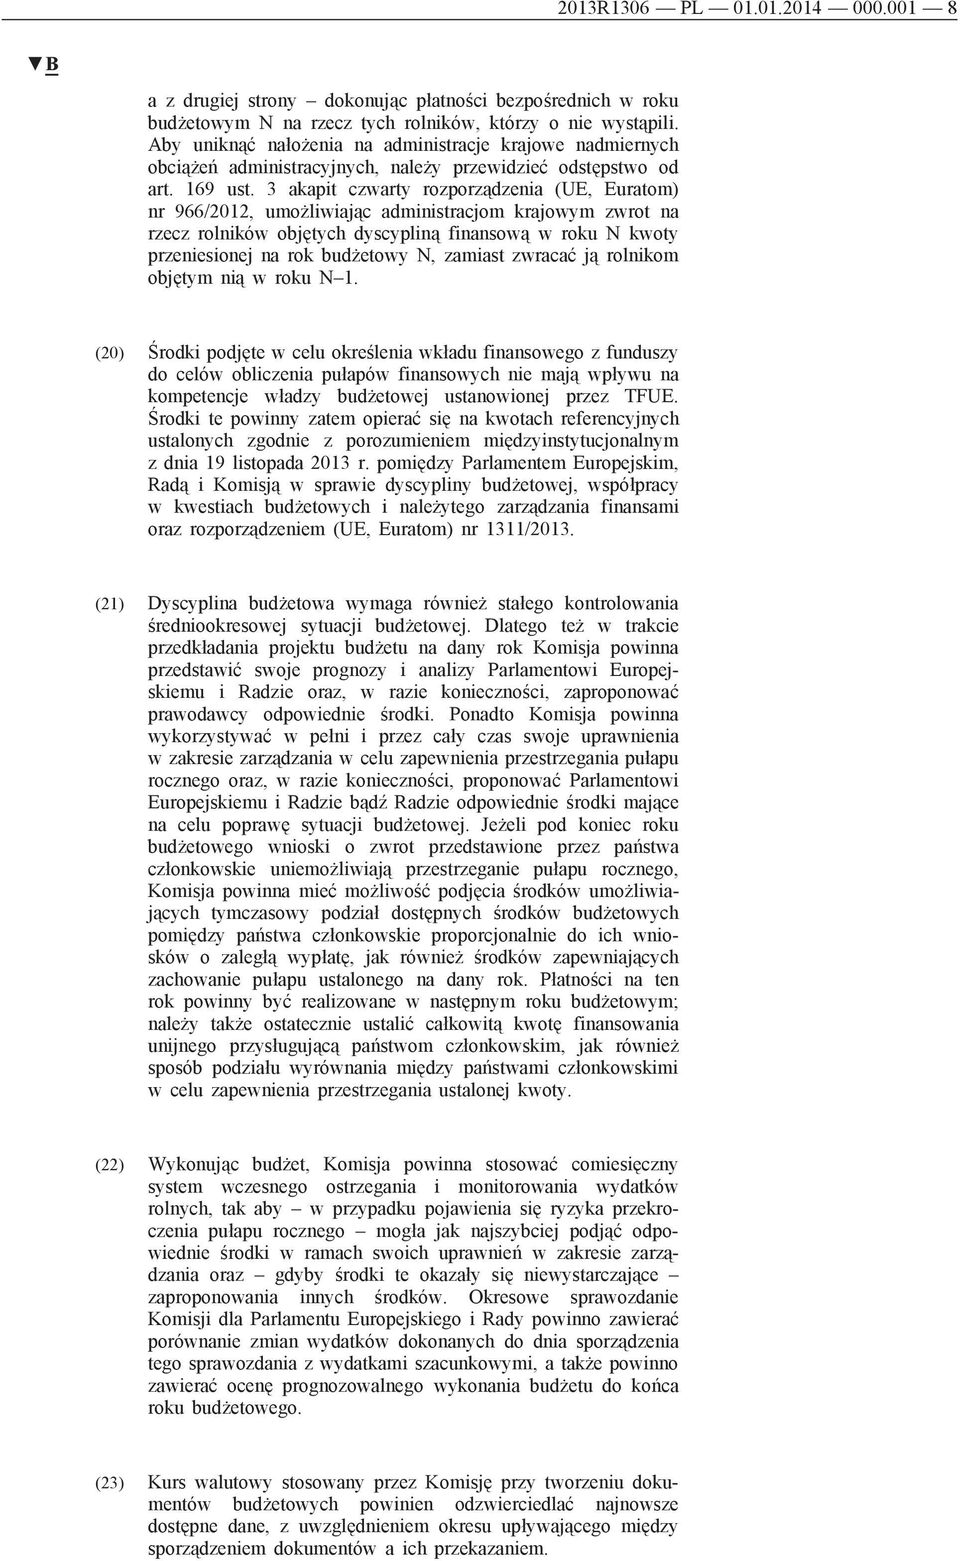 3 akapit czwarty rozporządzenia (UE, Euratom) nr 966/2012, umożliwiając administracjom krajowym zwrot na rzecz rolników objętych dyscypliną finansową w roku N kwoty przeniesionej na rok budżetowy N,